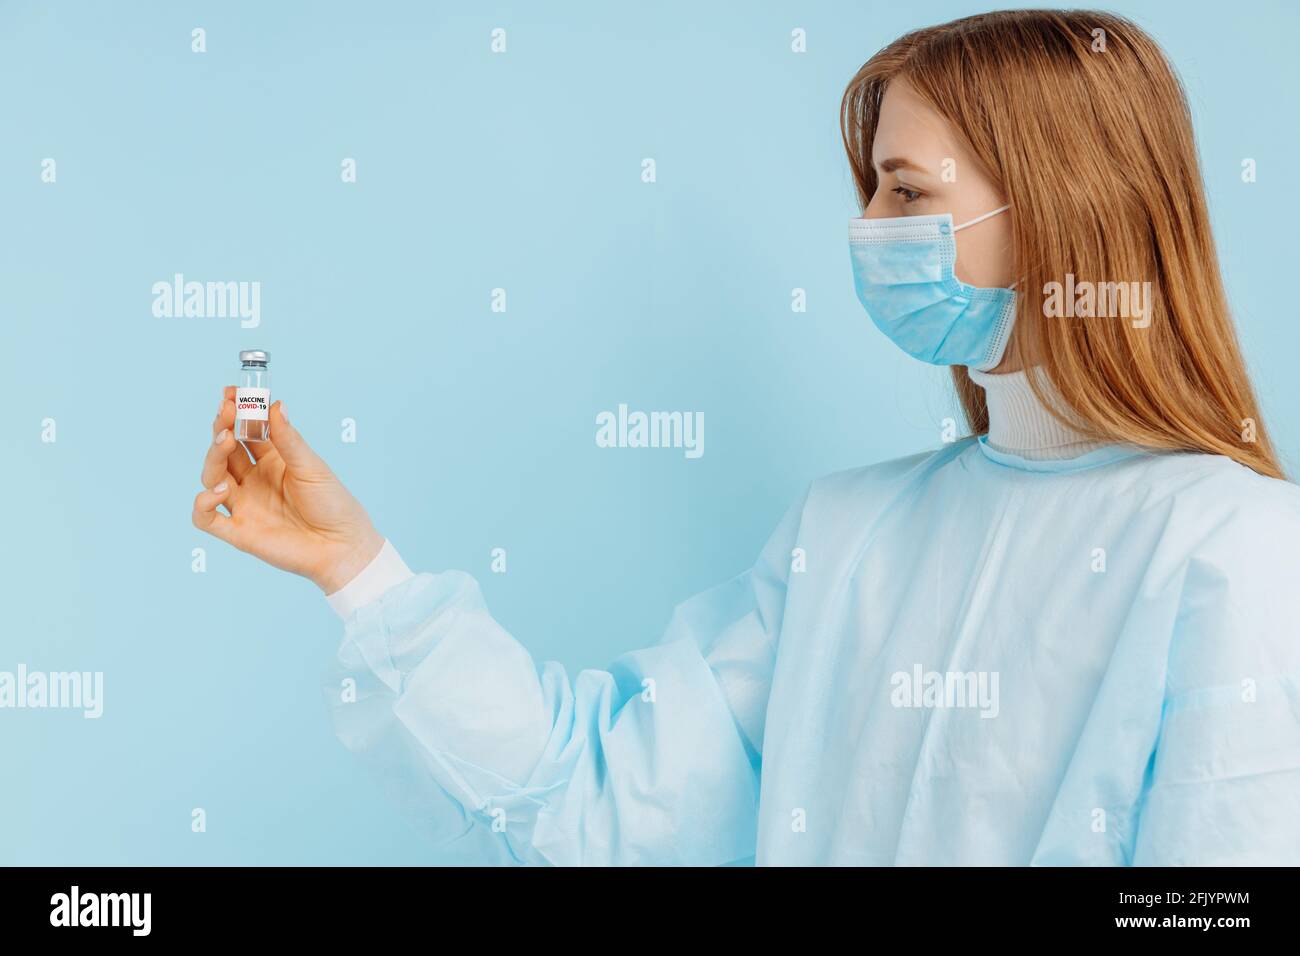 Médecin femme dans un masque médical sur son visage, tient un vaccin contre la grippe, la rougeole, le coronavirus pour la vaccination contre une épidémie, sur un bac bleu Banque D'Images